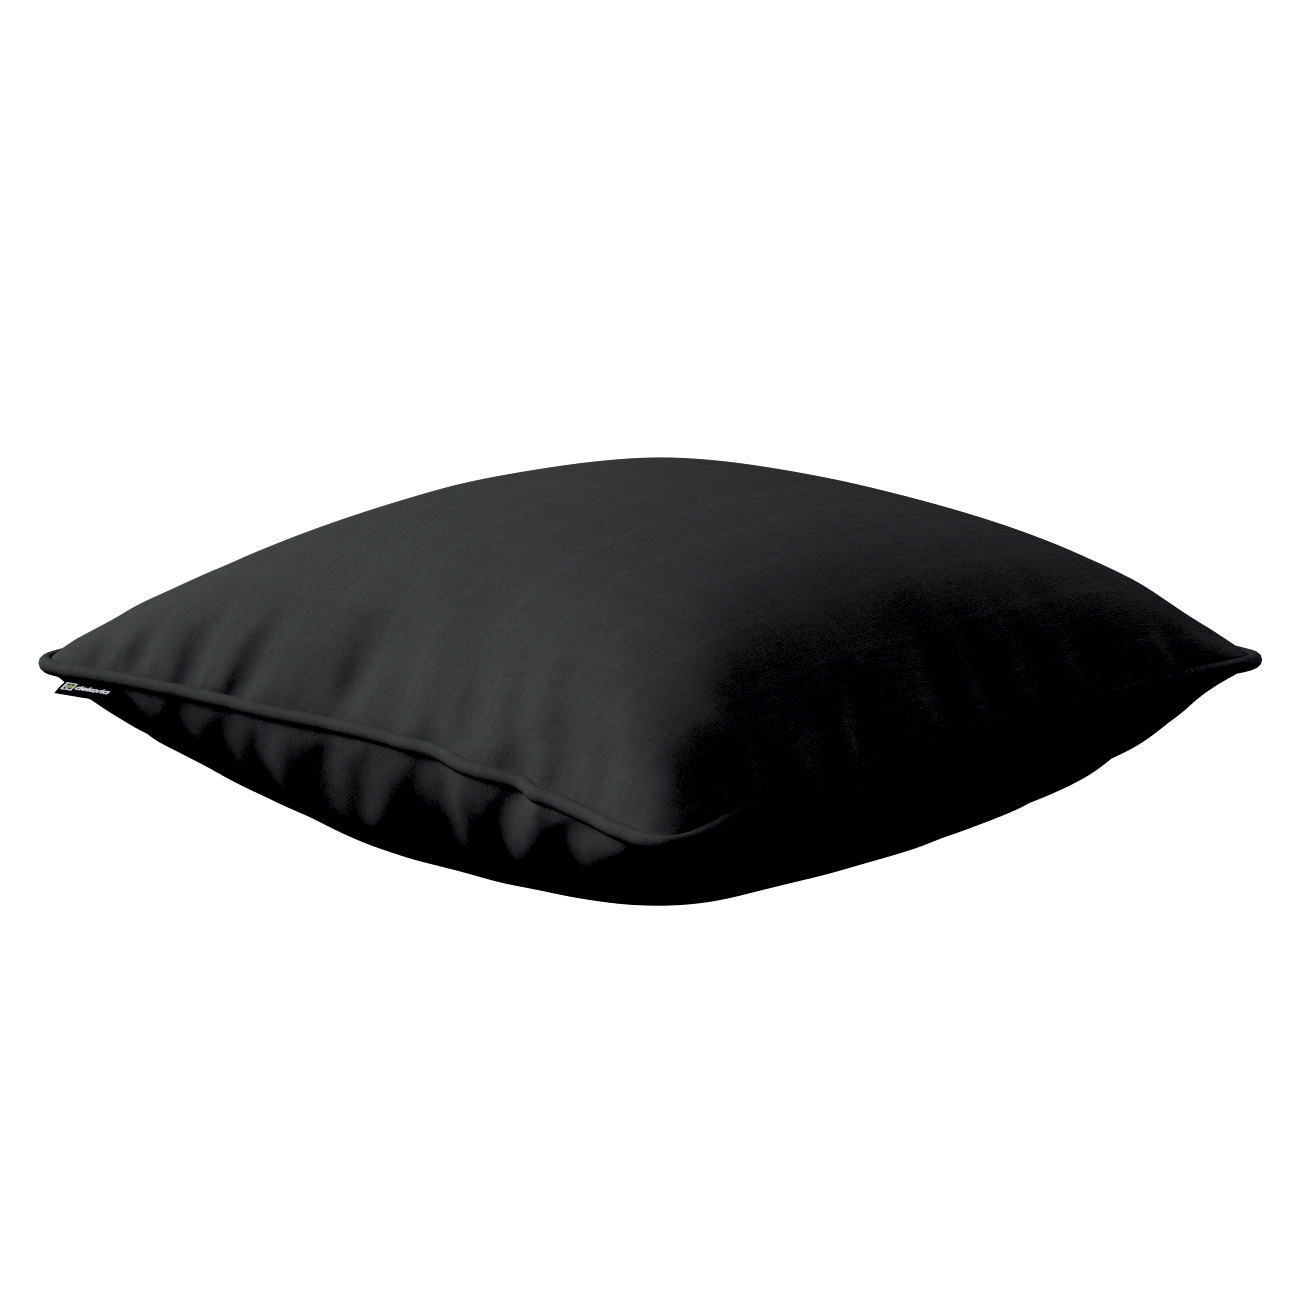 Kissenhülle Gabi mit Paspel, schwarz, 60 x 60 cm, Loneta (133-06) günstig online kaufen